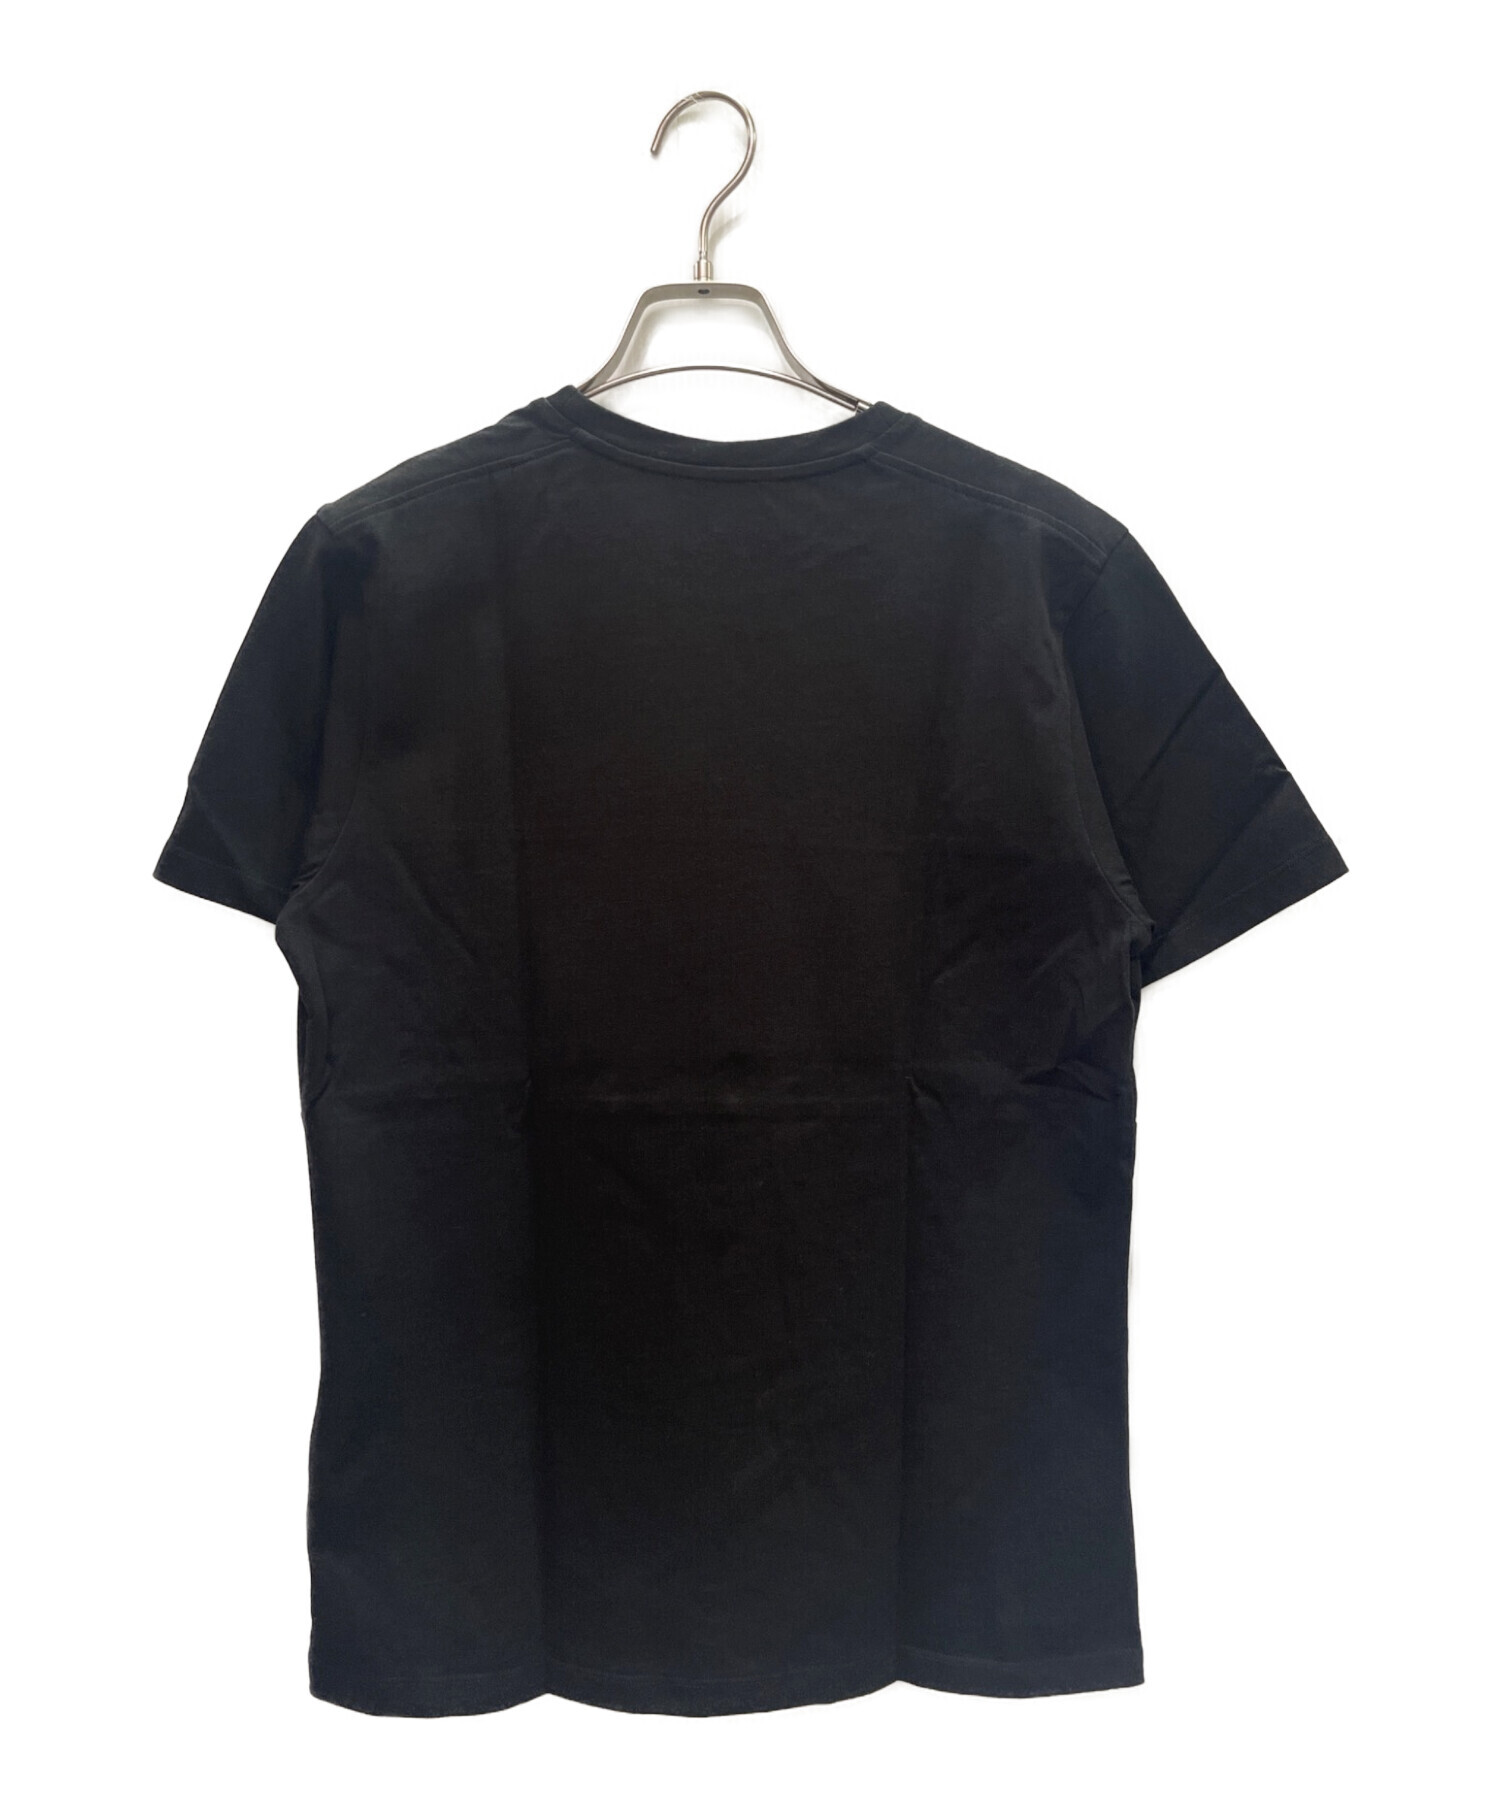 MONCLER (モンクレール) T-SHIRT GIROCOLLO 半袖Tシャツ ブラック サイズ:S